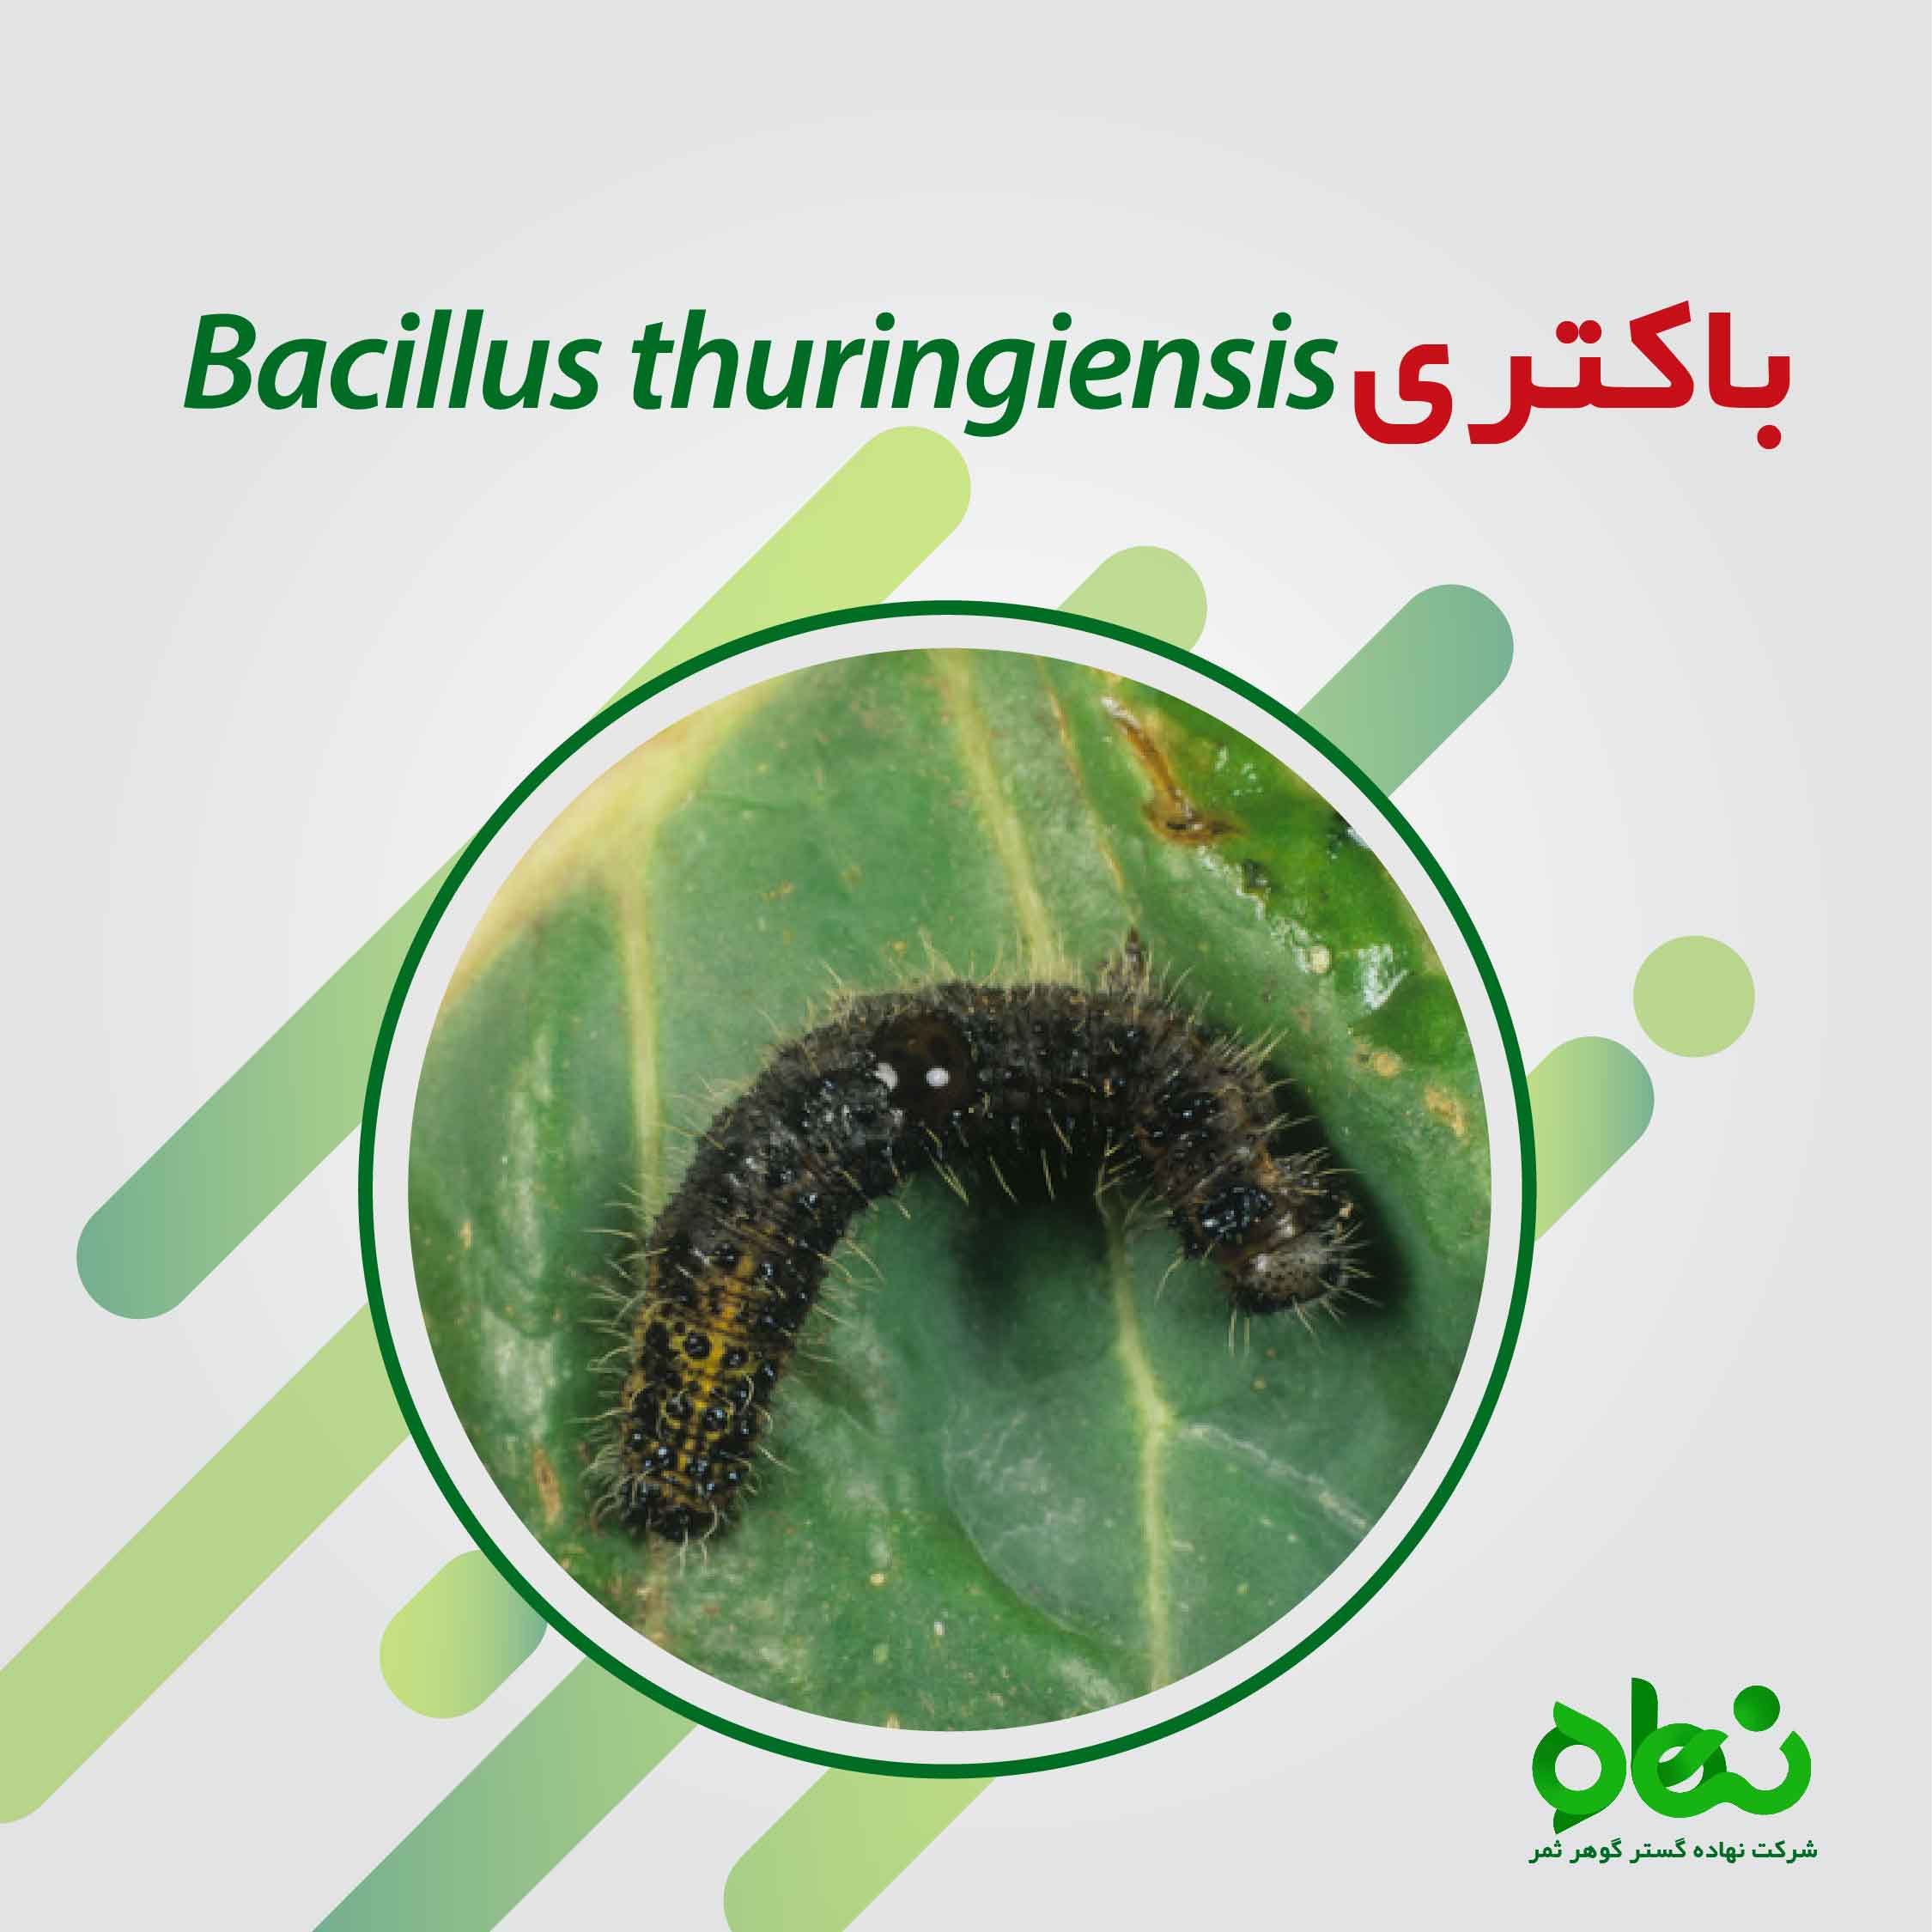 درباره باسیلوس تورنجینسیس Bacillus thuringiensis به اختصار BT چه می دانید ؟ 